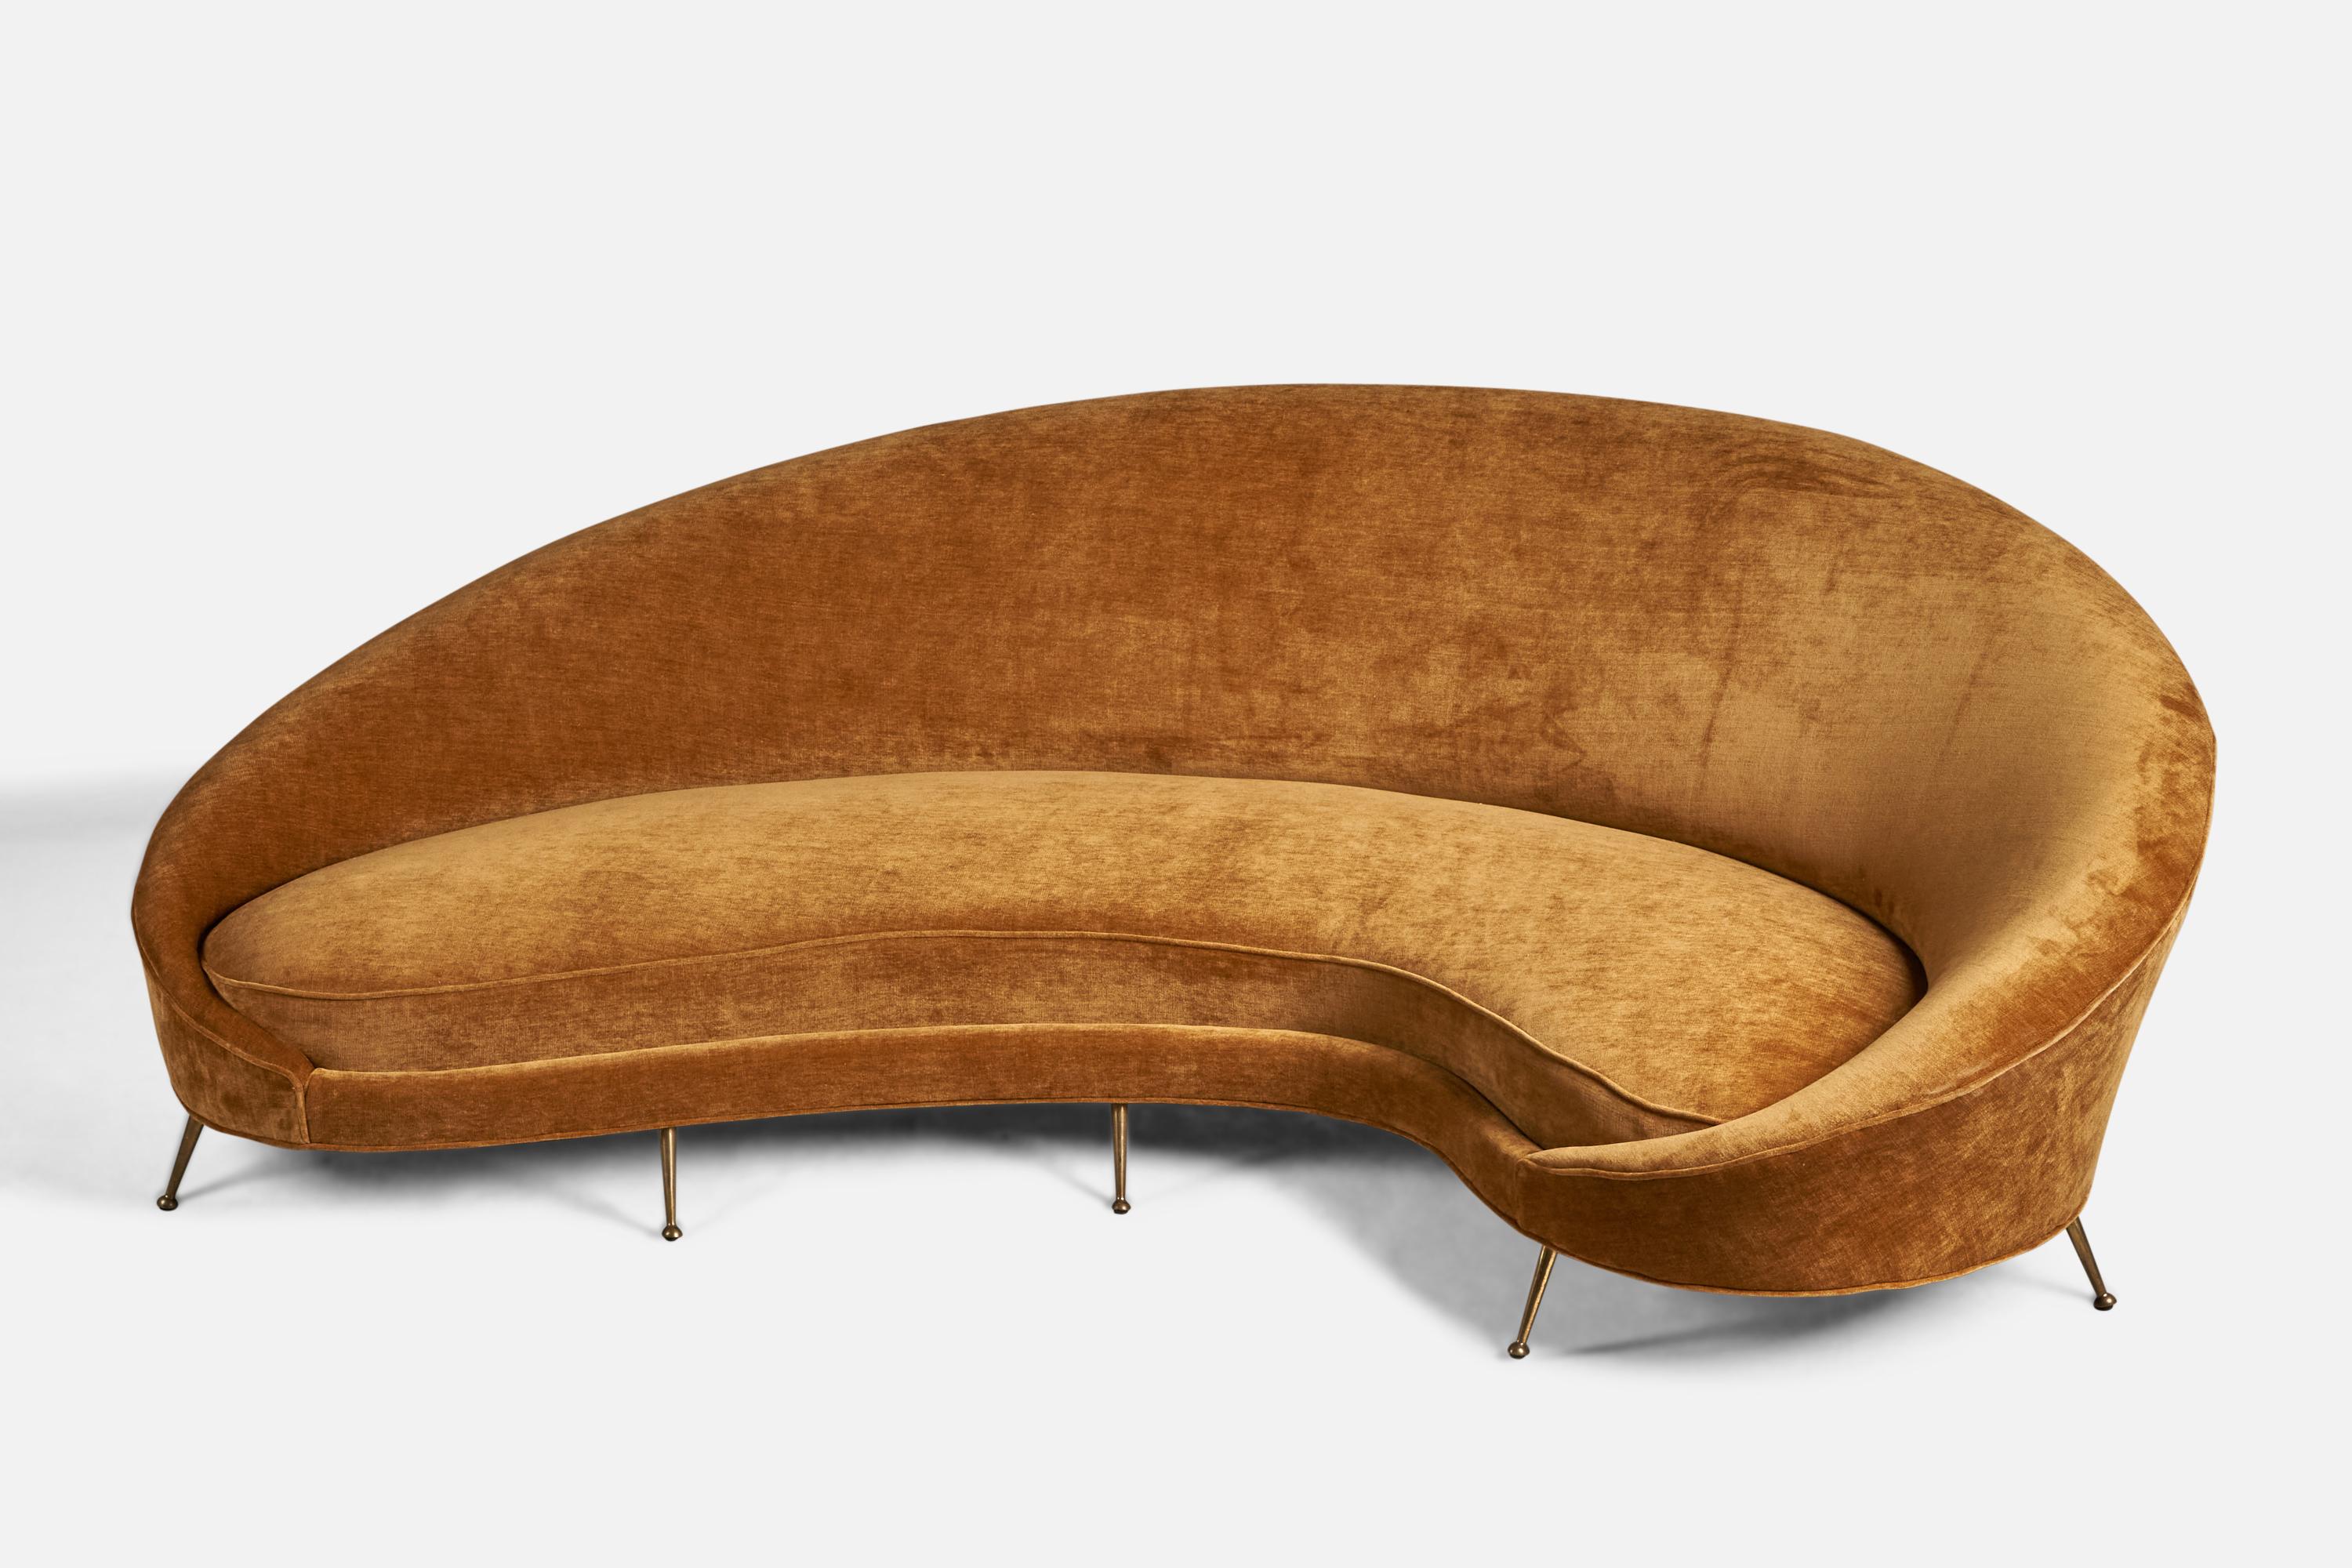 Ein geschwungenes Sofa aus Messing und orangefarbenem Samtstoff, entworfen von Federico Munari und hergestellt von ISA Bergamo, Italien, 1950er Jahre.

14